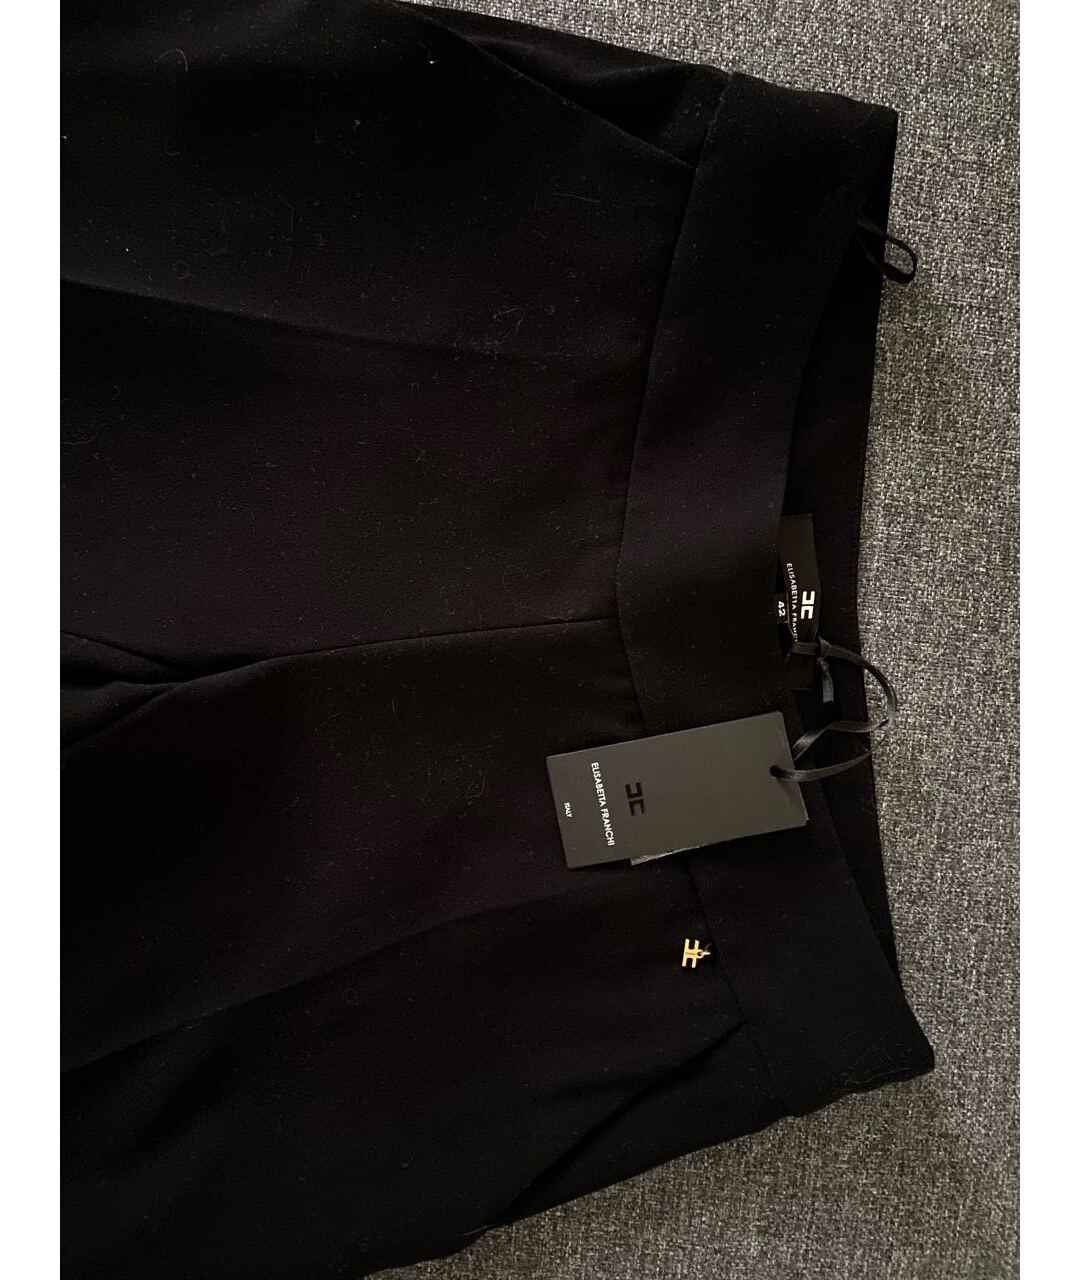 ELISABETTA FRANCHI Черные полиэстеровые прямые брюки, фото 3